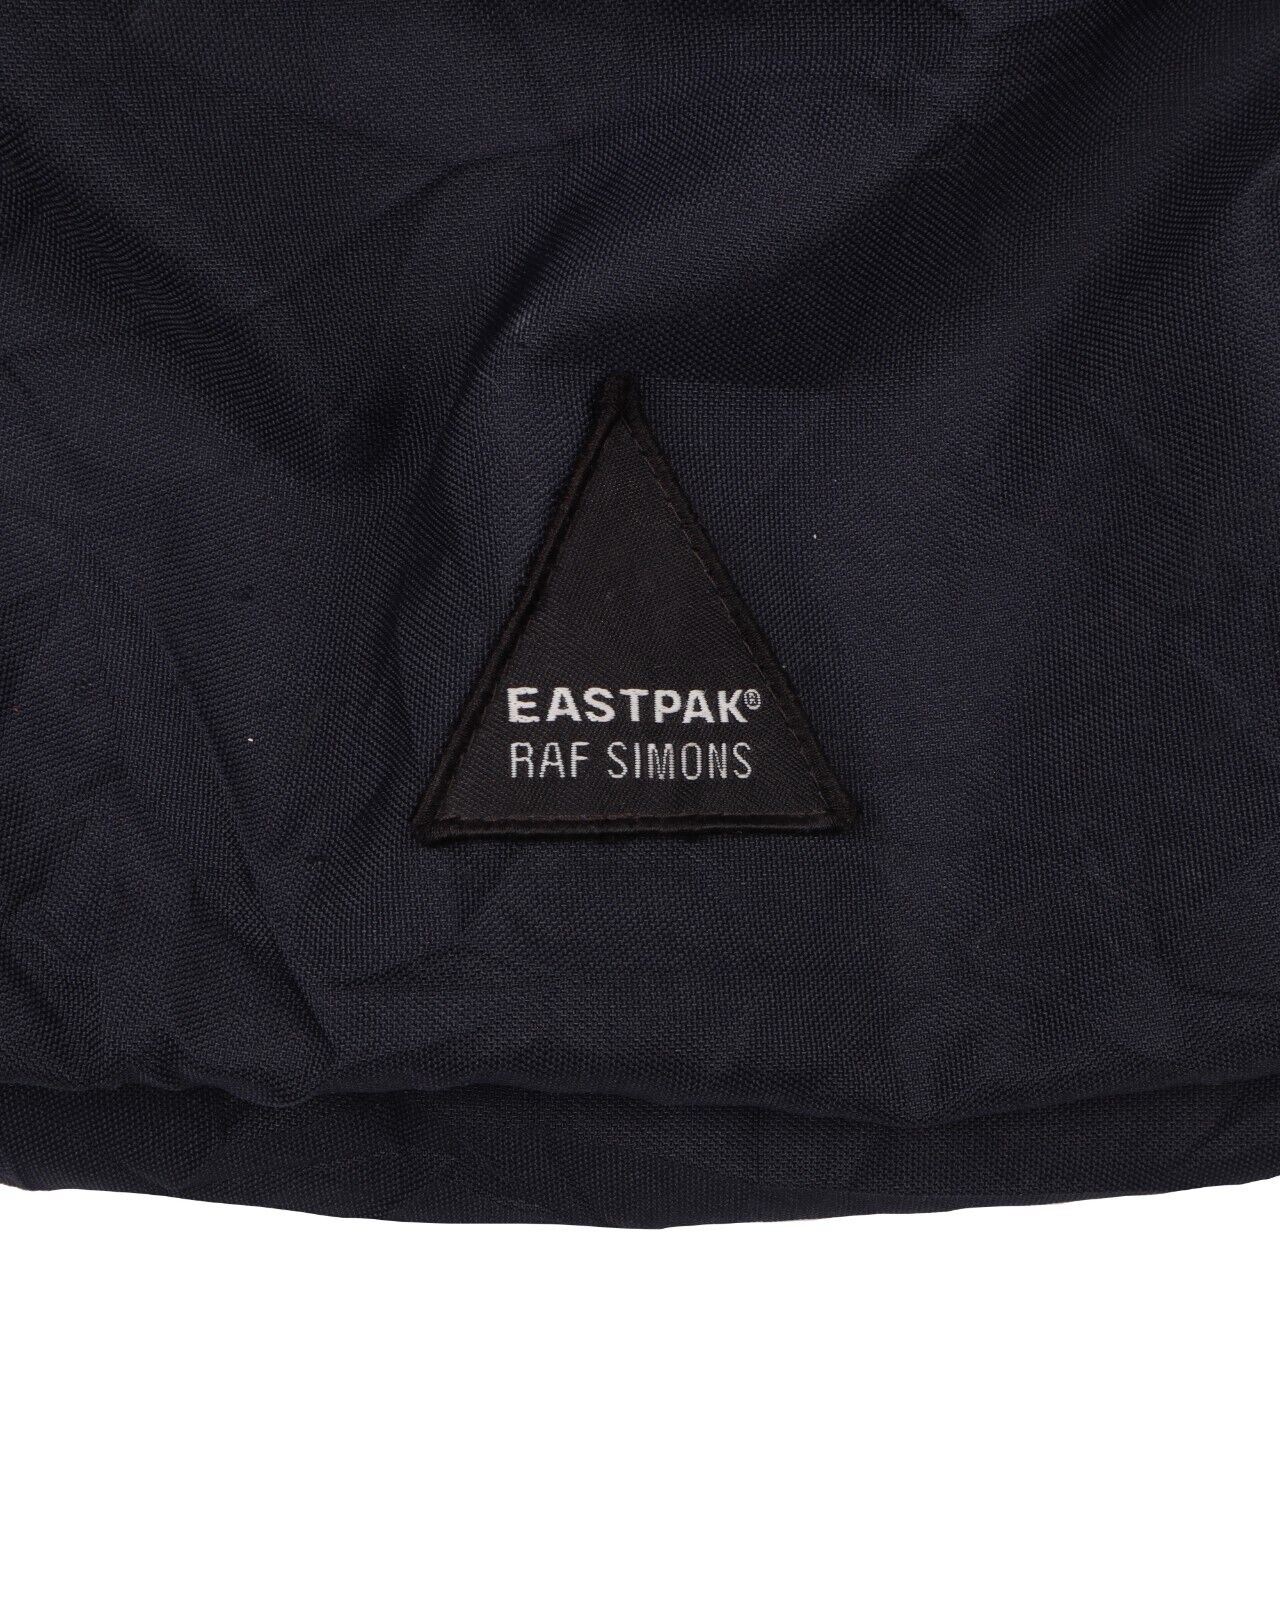 EASTPAK x RAF SIMONS 2008 Crinked Backpack Navy Blue Nylon 